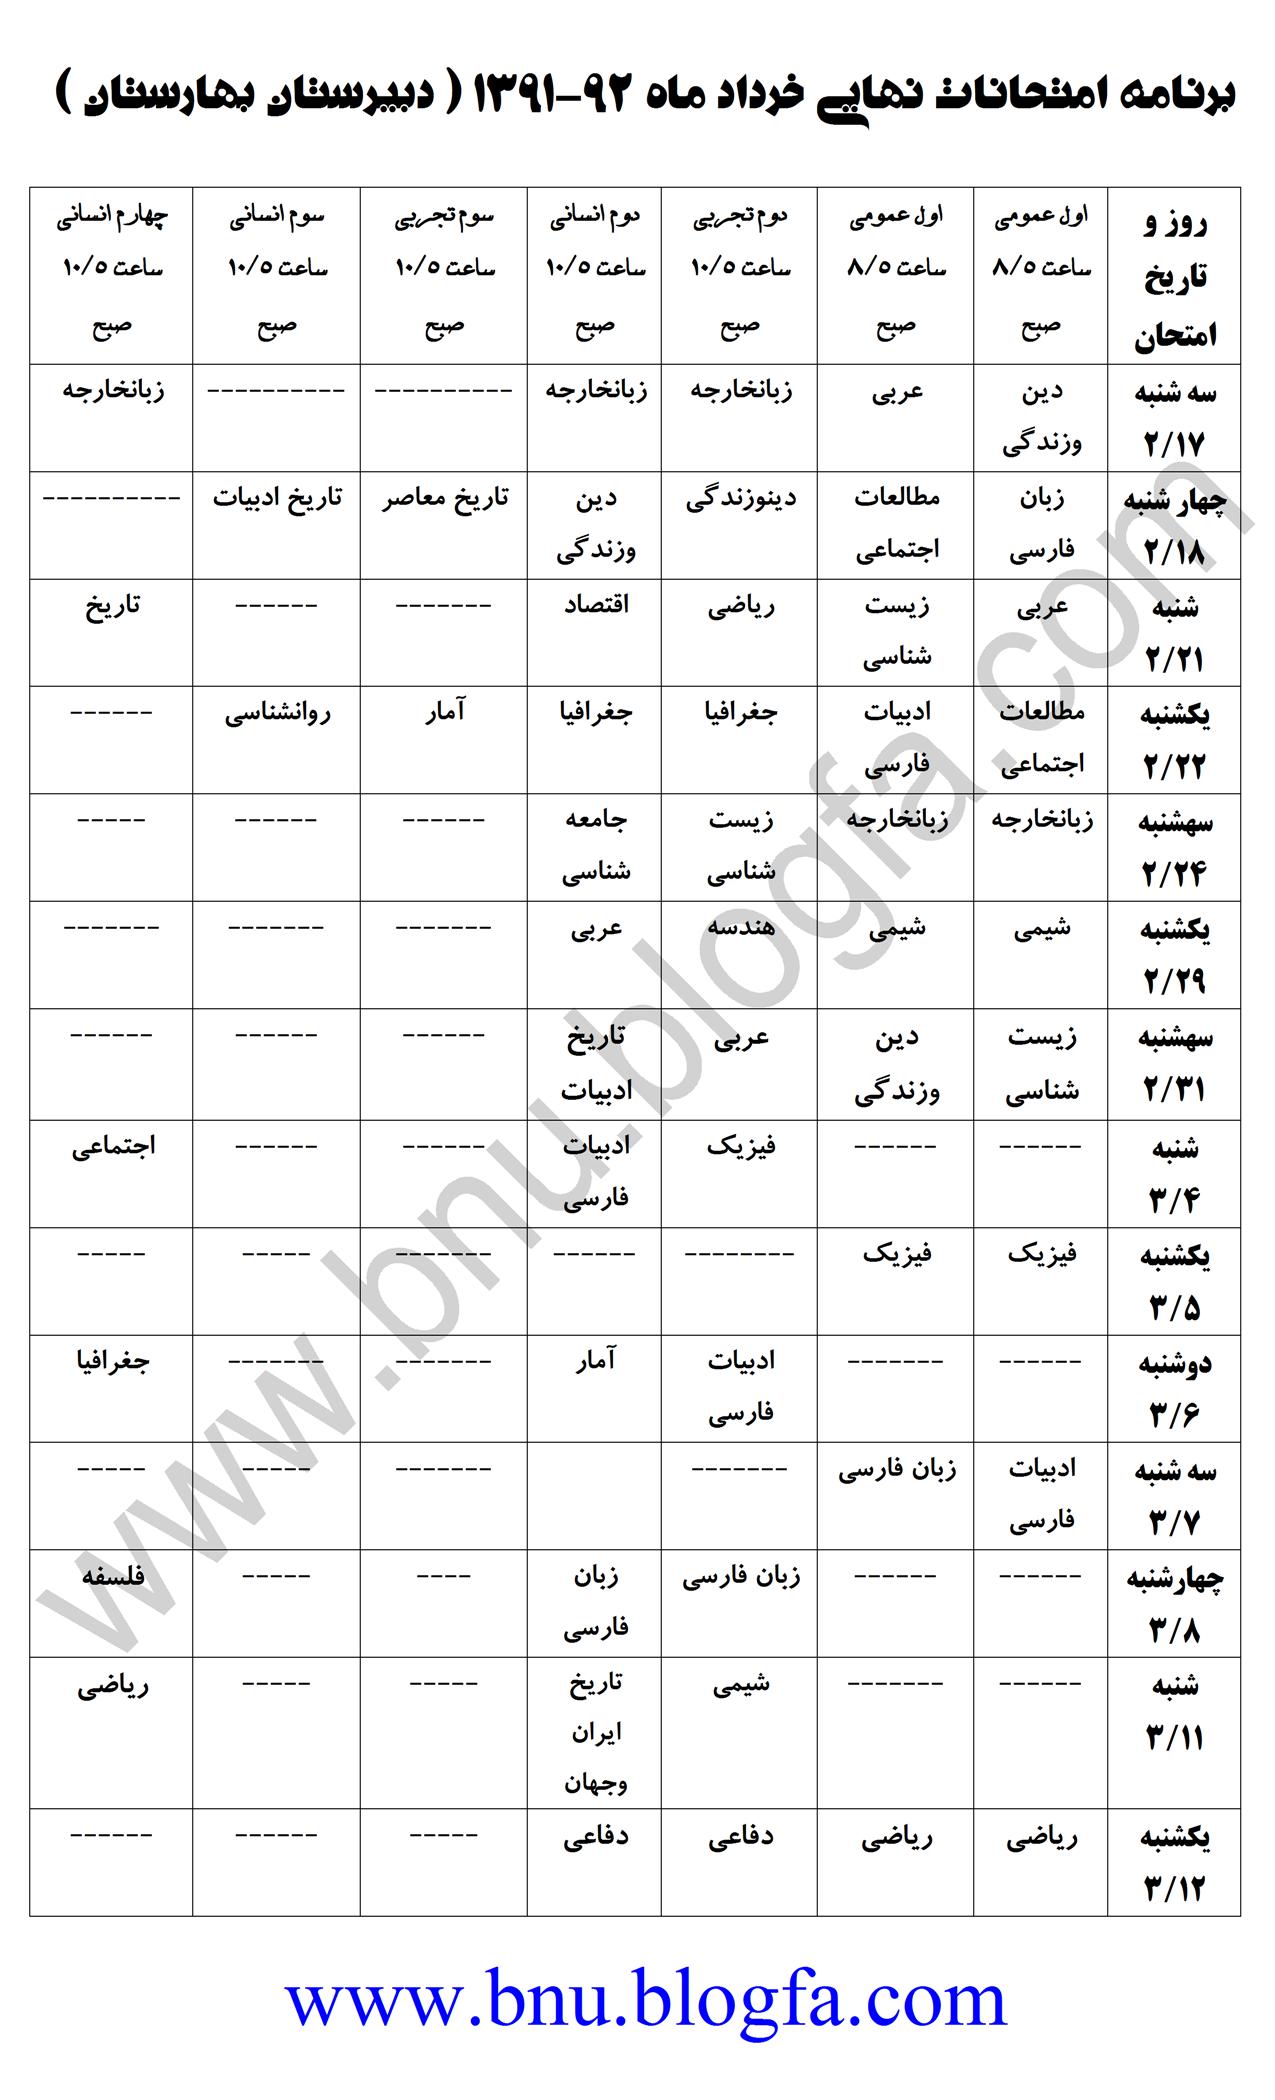 برنامه امتحانات نهایی 92-1391 دبیرستان بهارستان